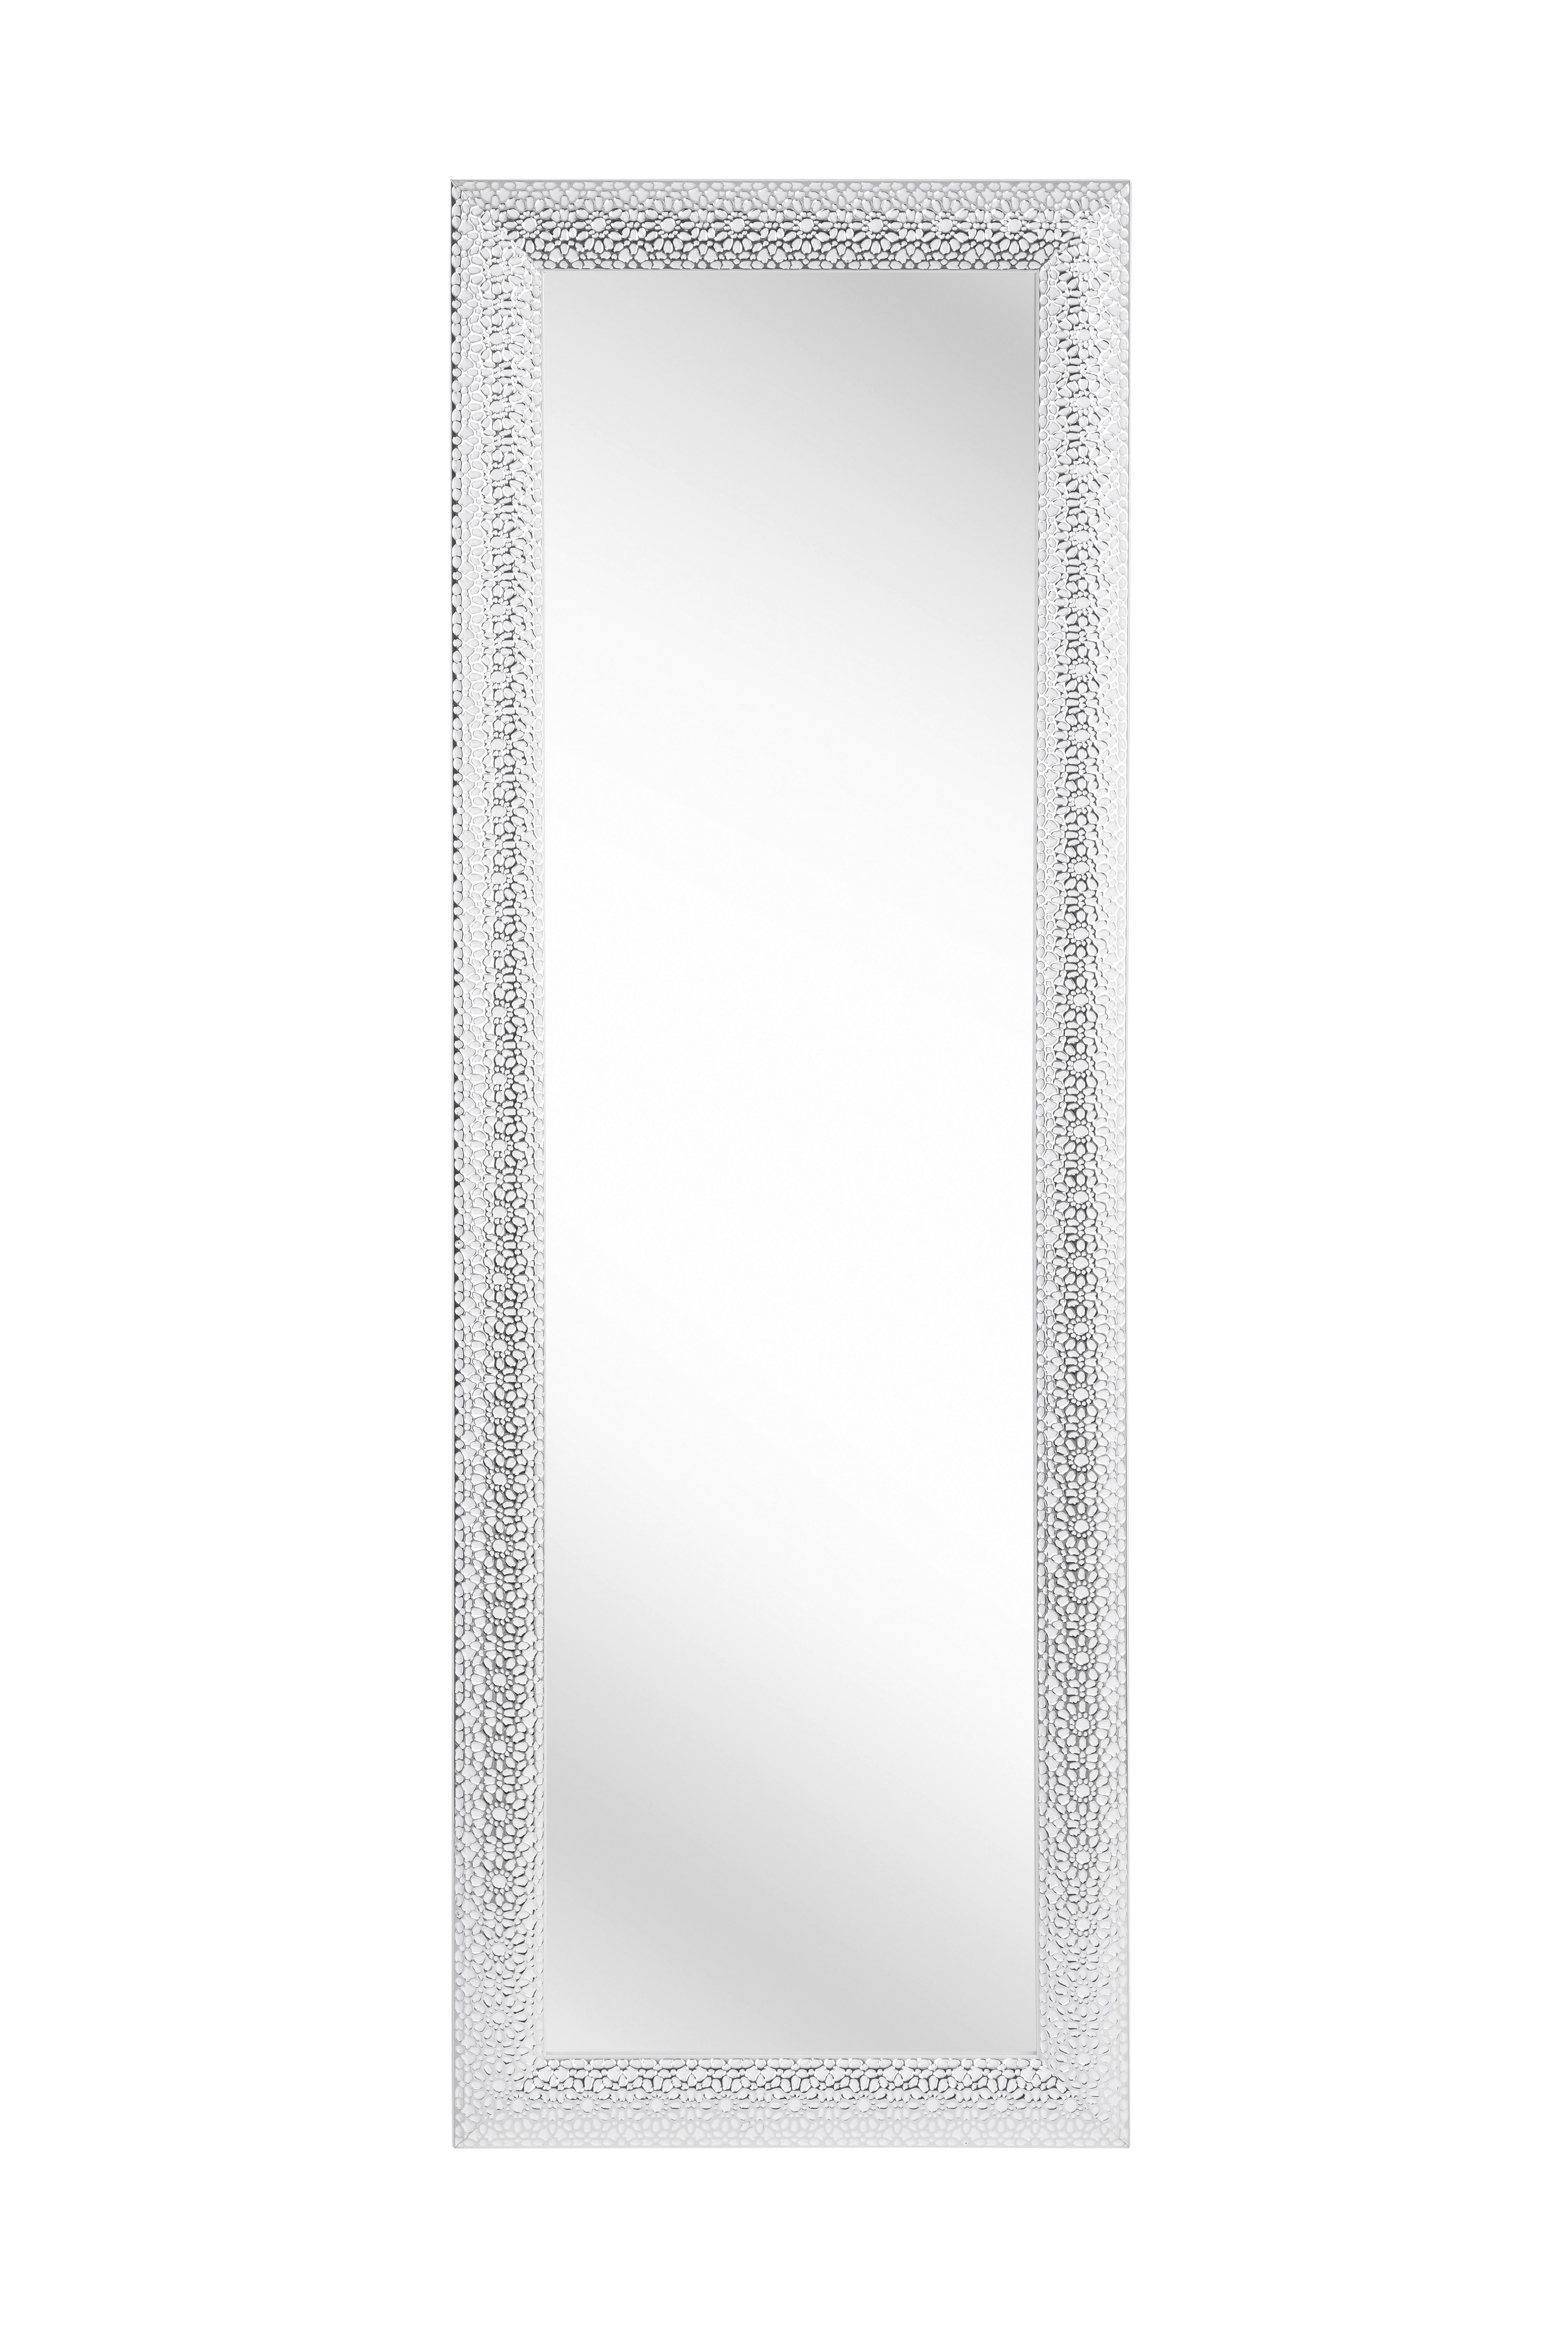 WANDSPIEGEL 50/150/3 cm  - Silberfarben/weiss, Lifestyle, Glas/Kunststoff (50/150/3cm) - Xora